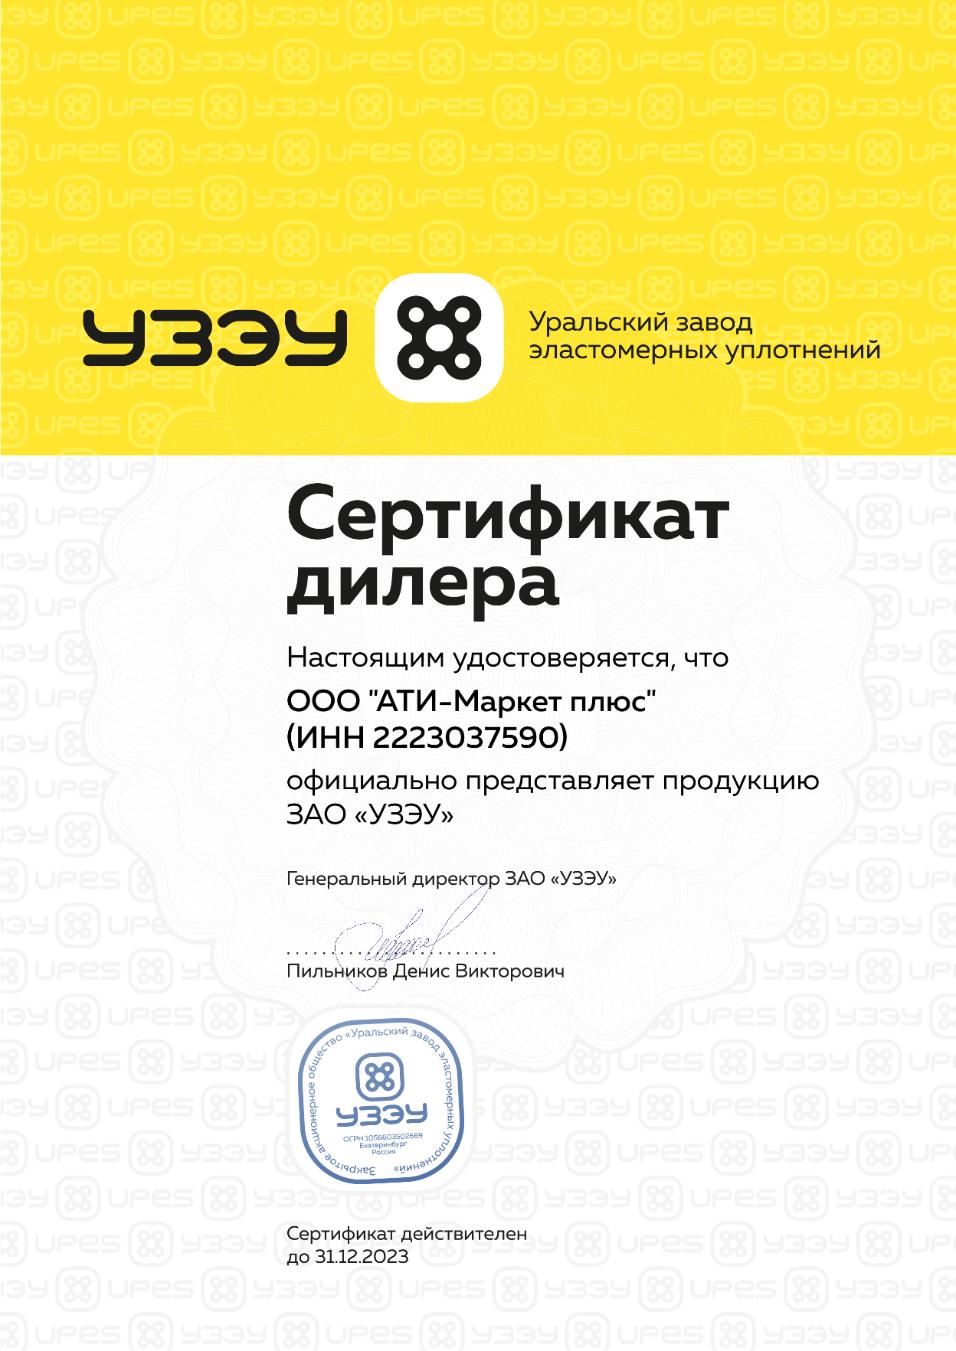 Сертификат дилера УЗЭУ